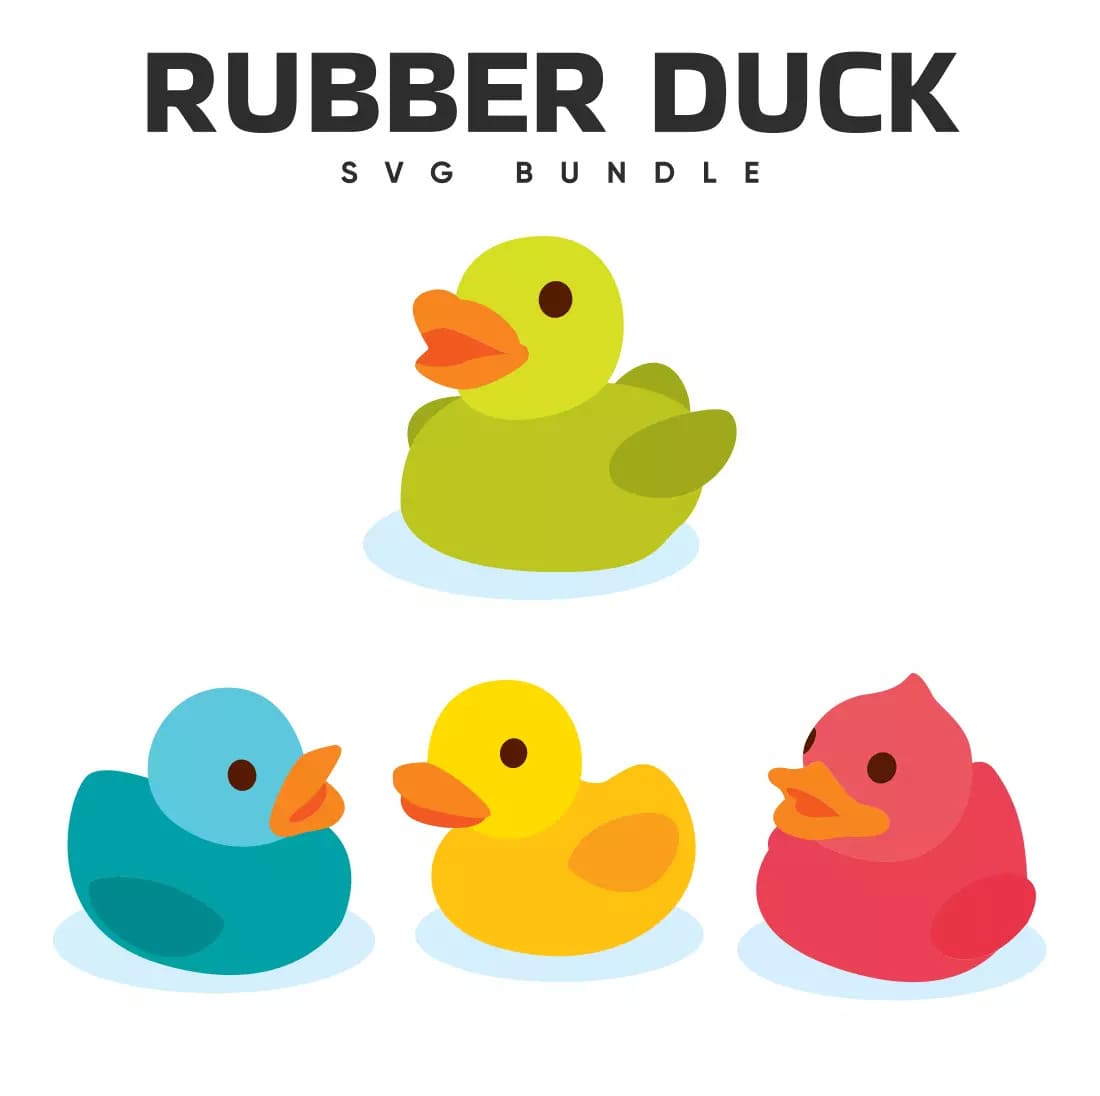 Rubber duck svg bundle.